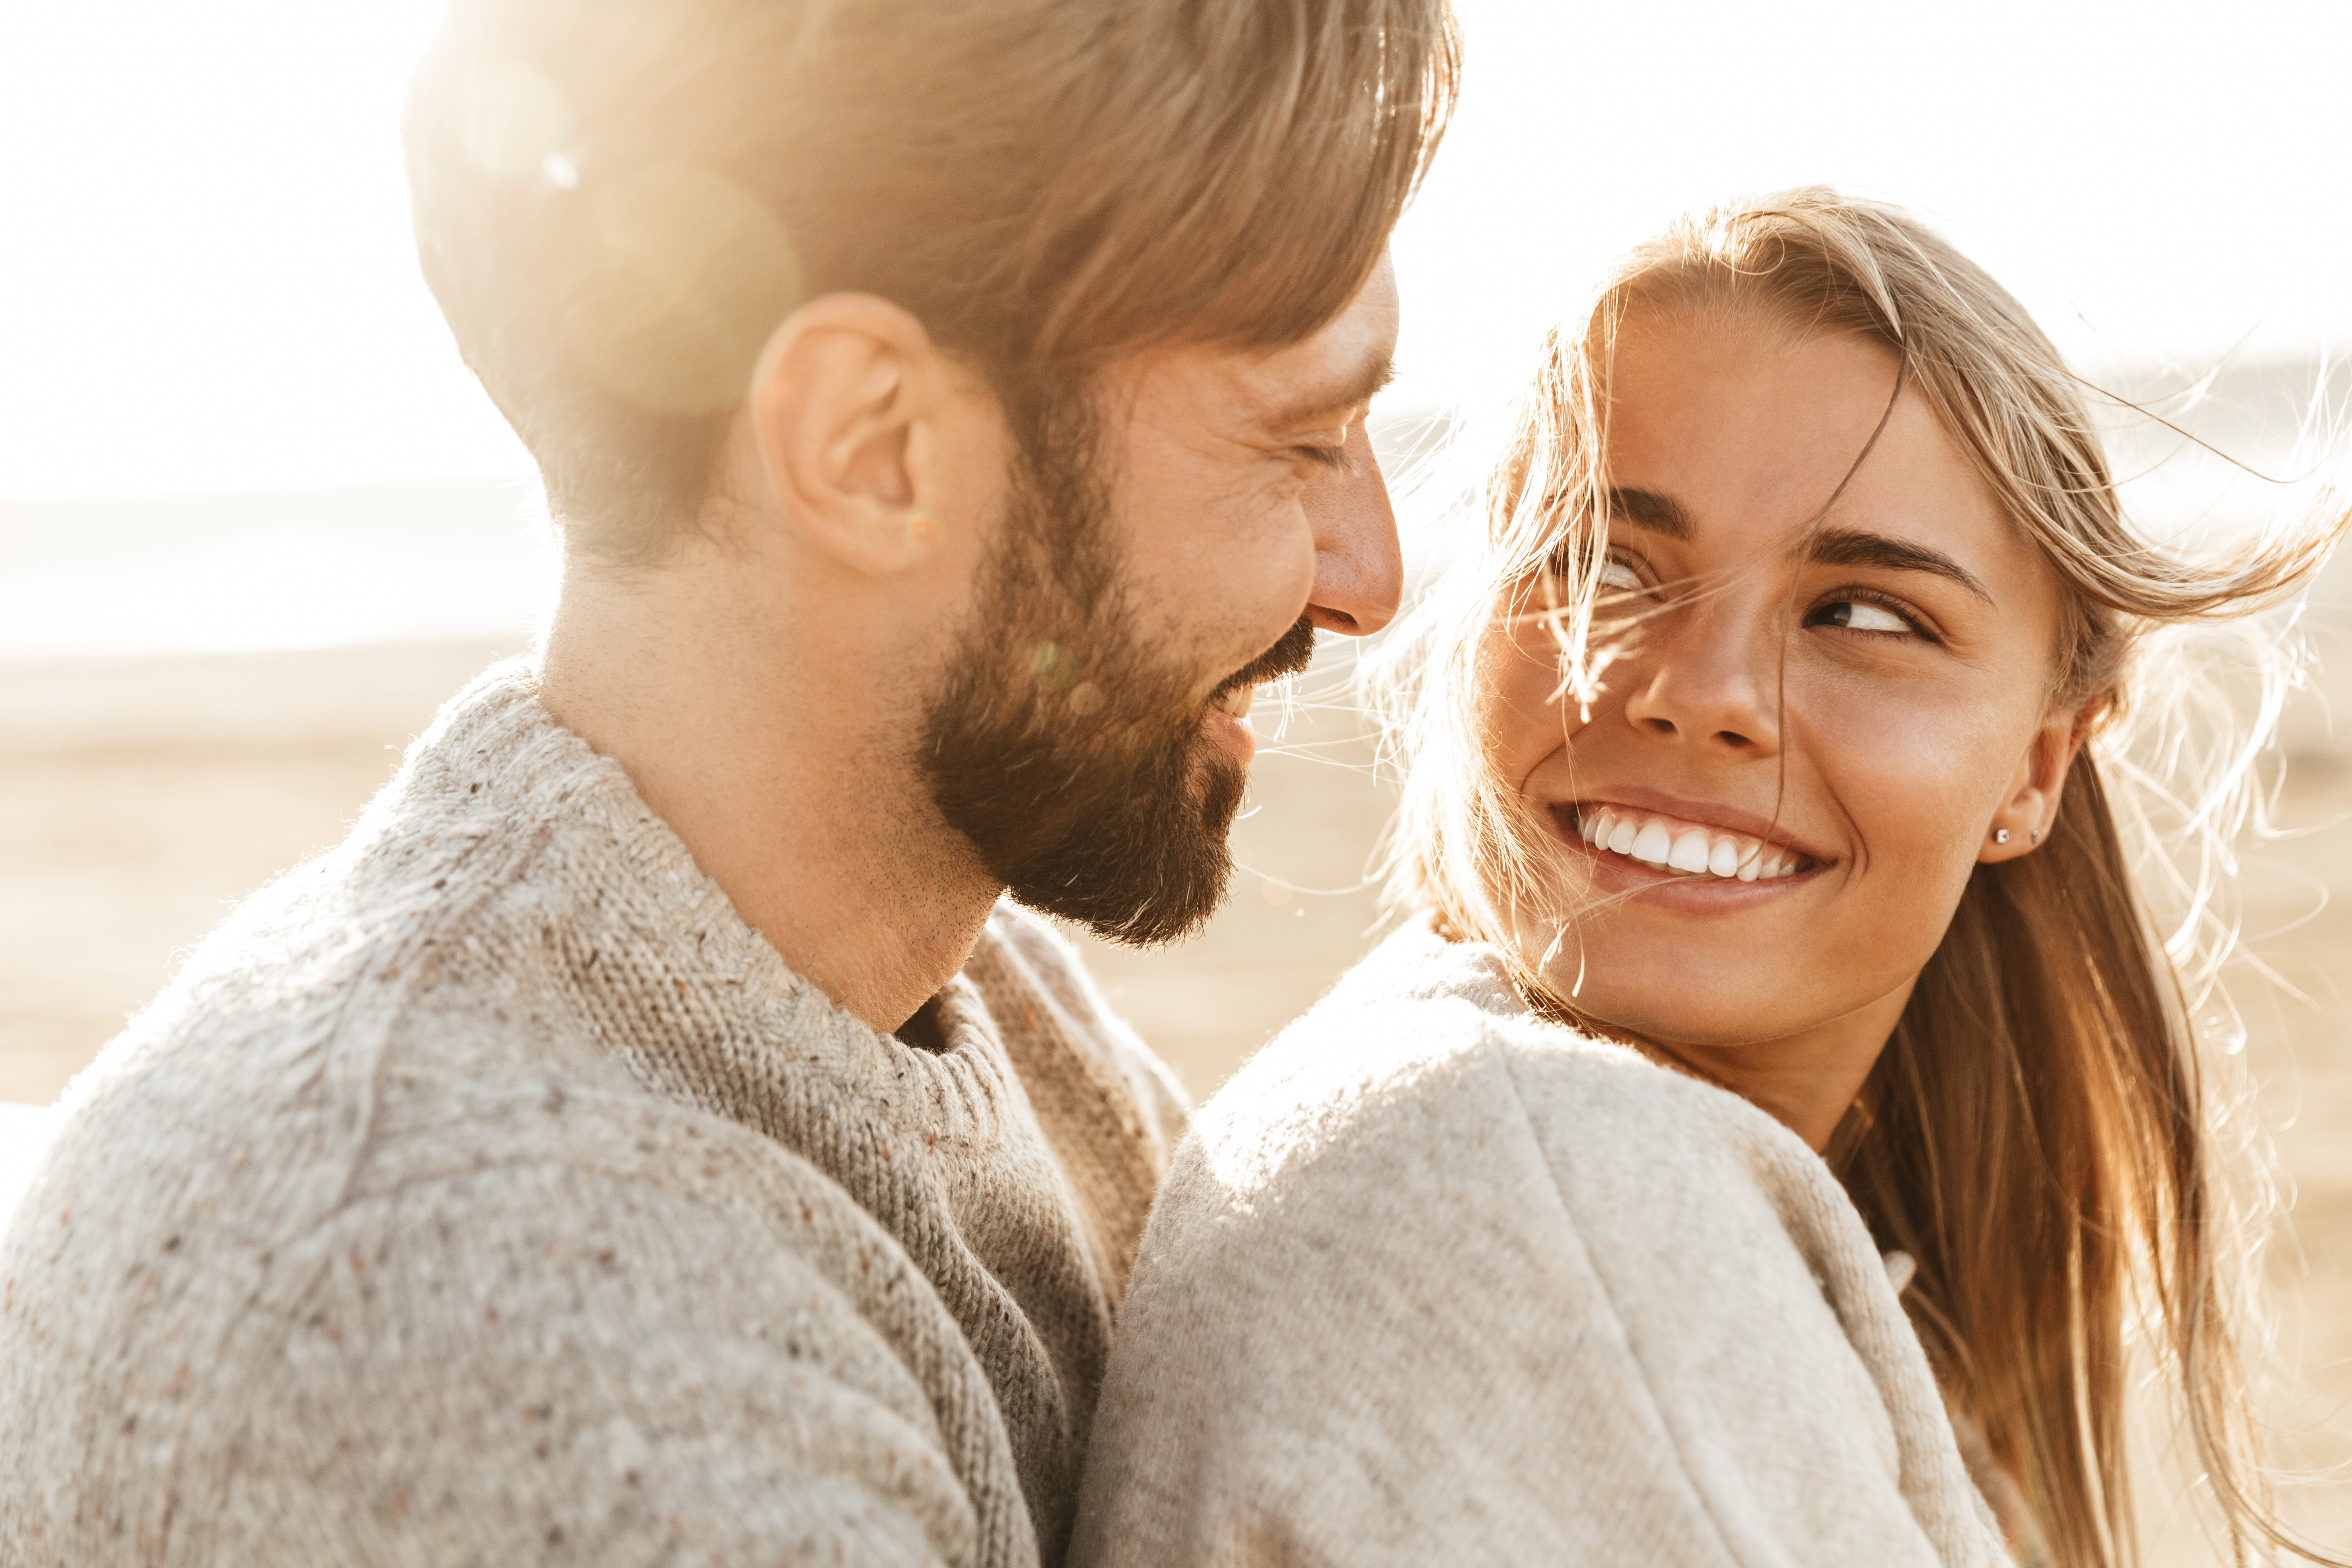 Un couple heureux | Source : Shutterstock